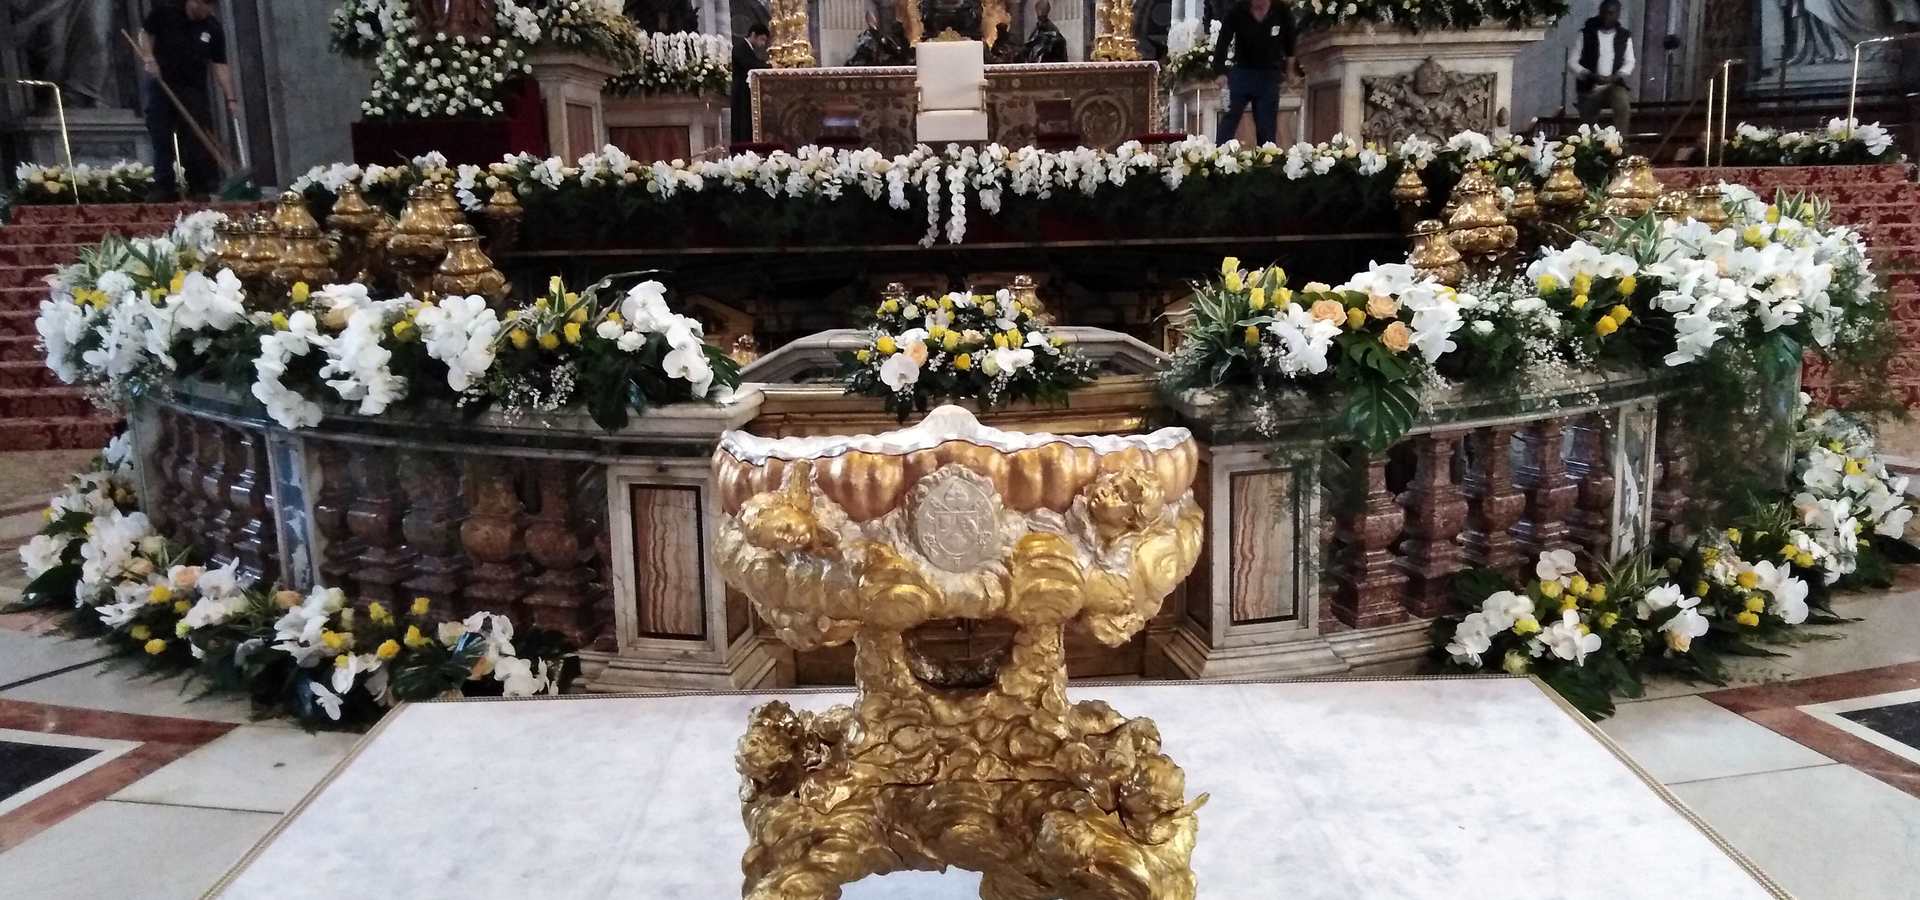 Vatikanske krasitve in kultura rabe cvetja